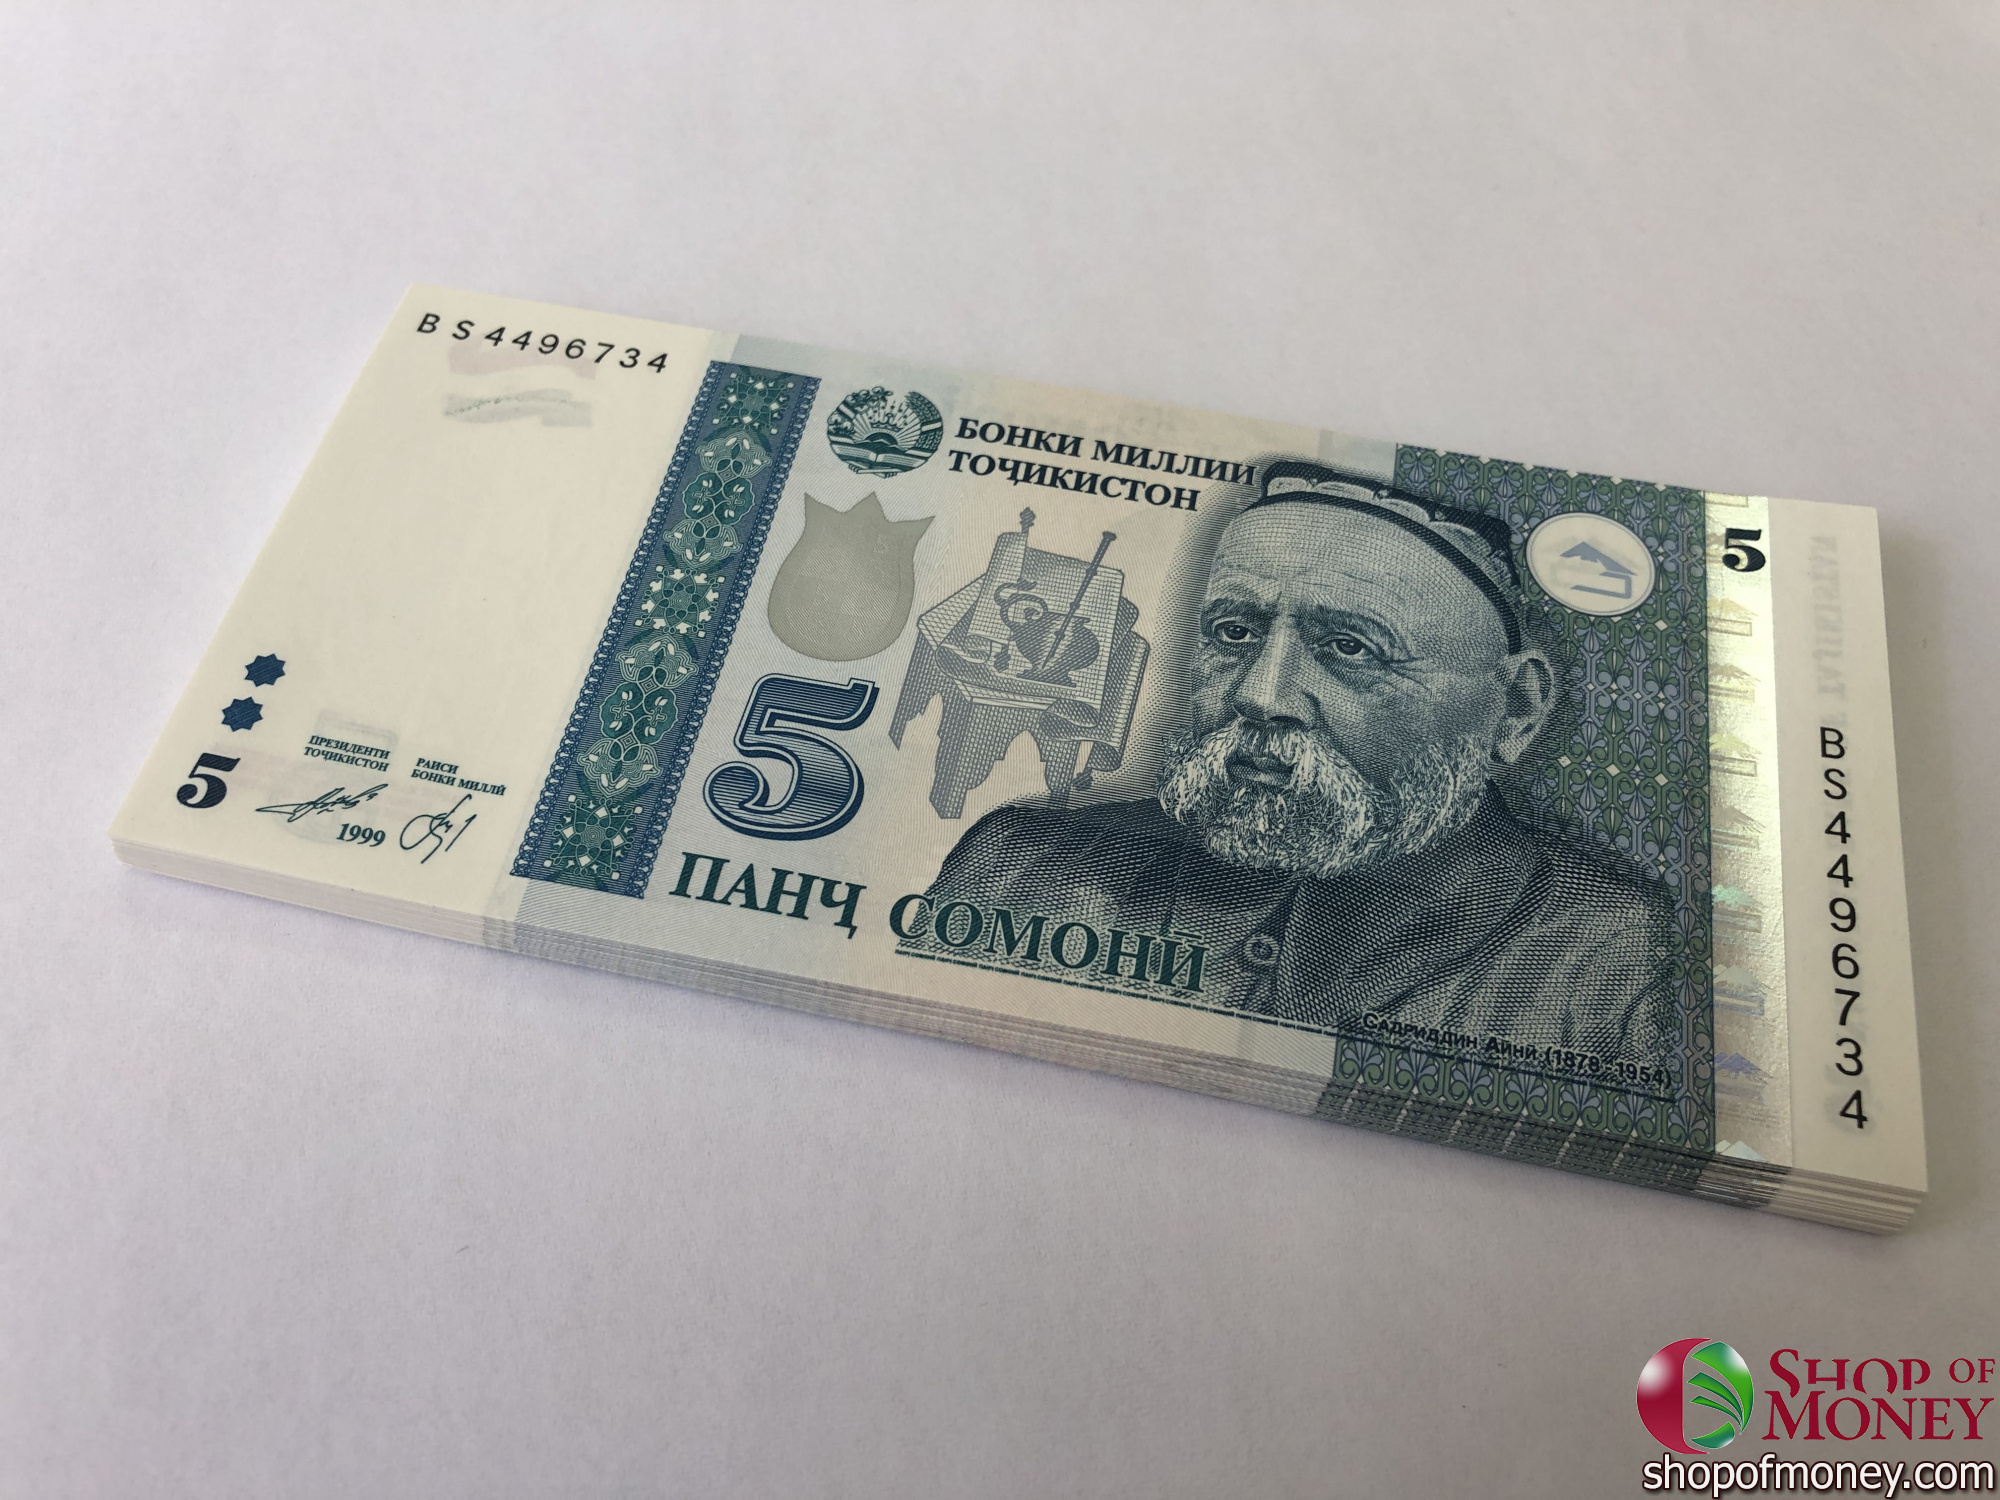 500 сомони в рублях на сегодня. Купюры Таджикистана. Купюра Сомони. Банкнота 50 Сомони. Таджикский Сомони.